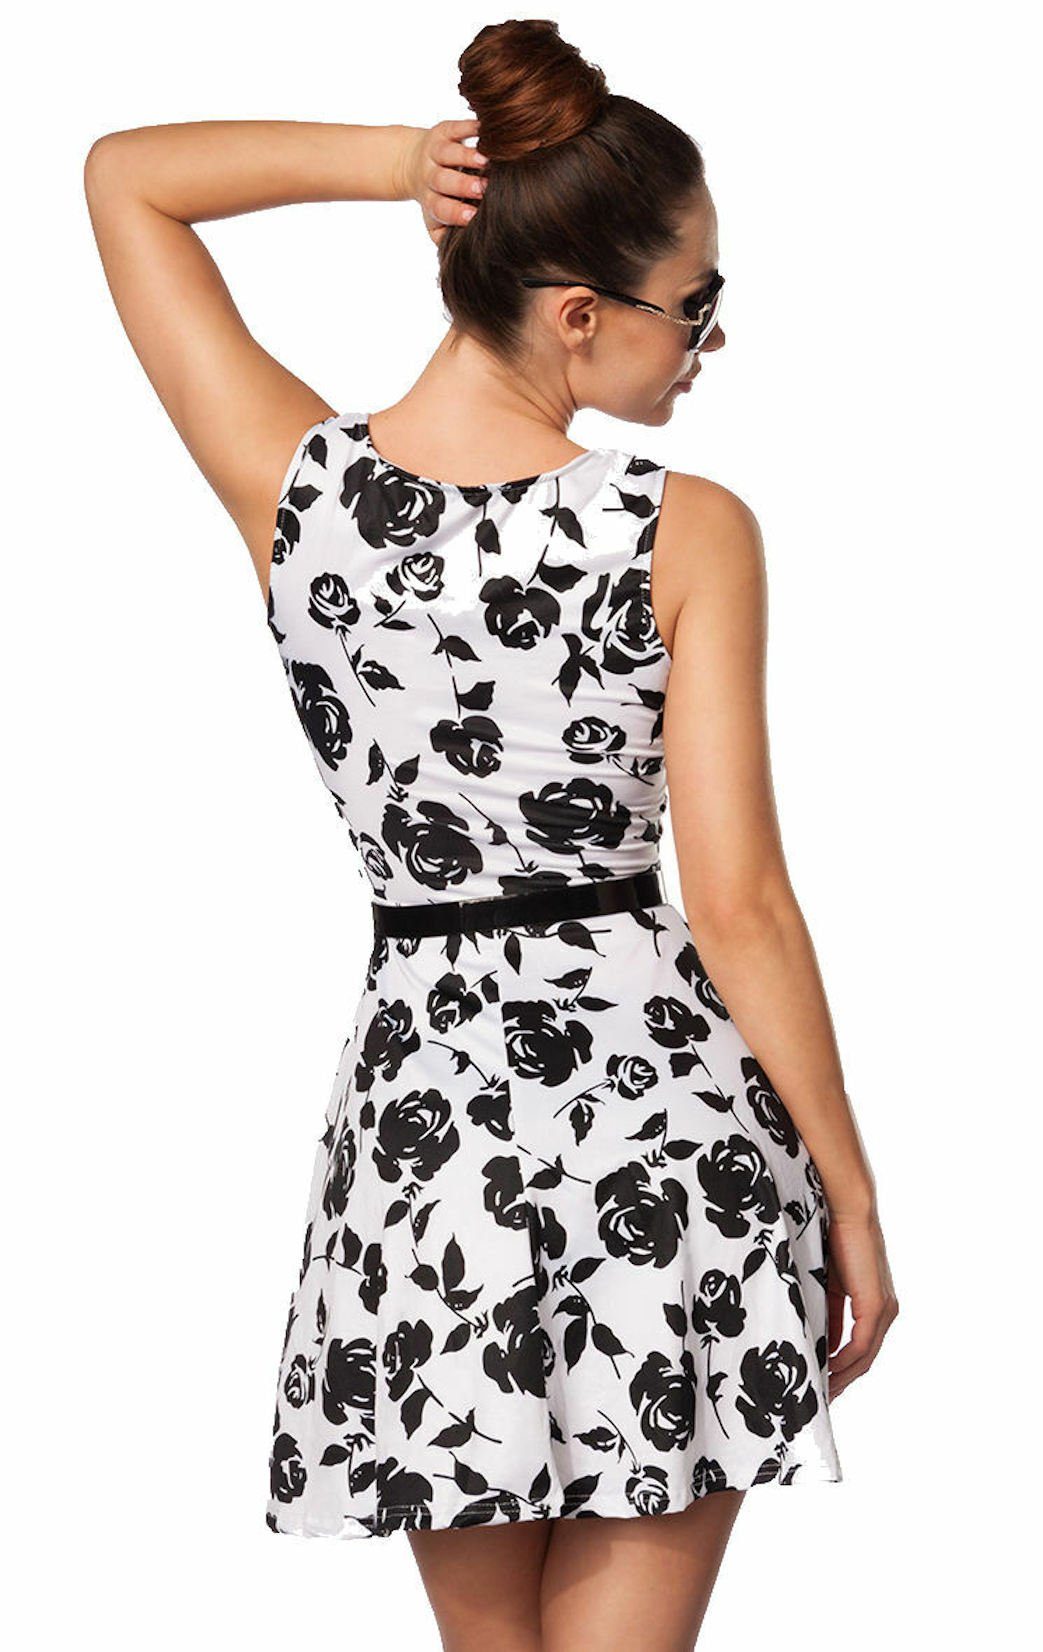 Sommerkleid Sommerkleid Minikleid Gürtel weiß luftiges Damen-Kleid geblümt schwarz